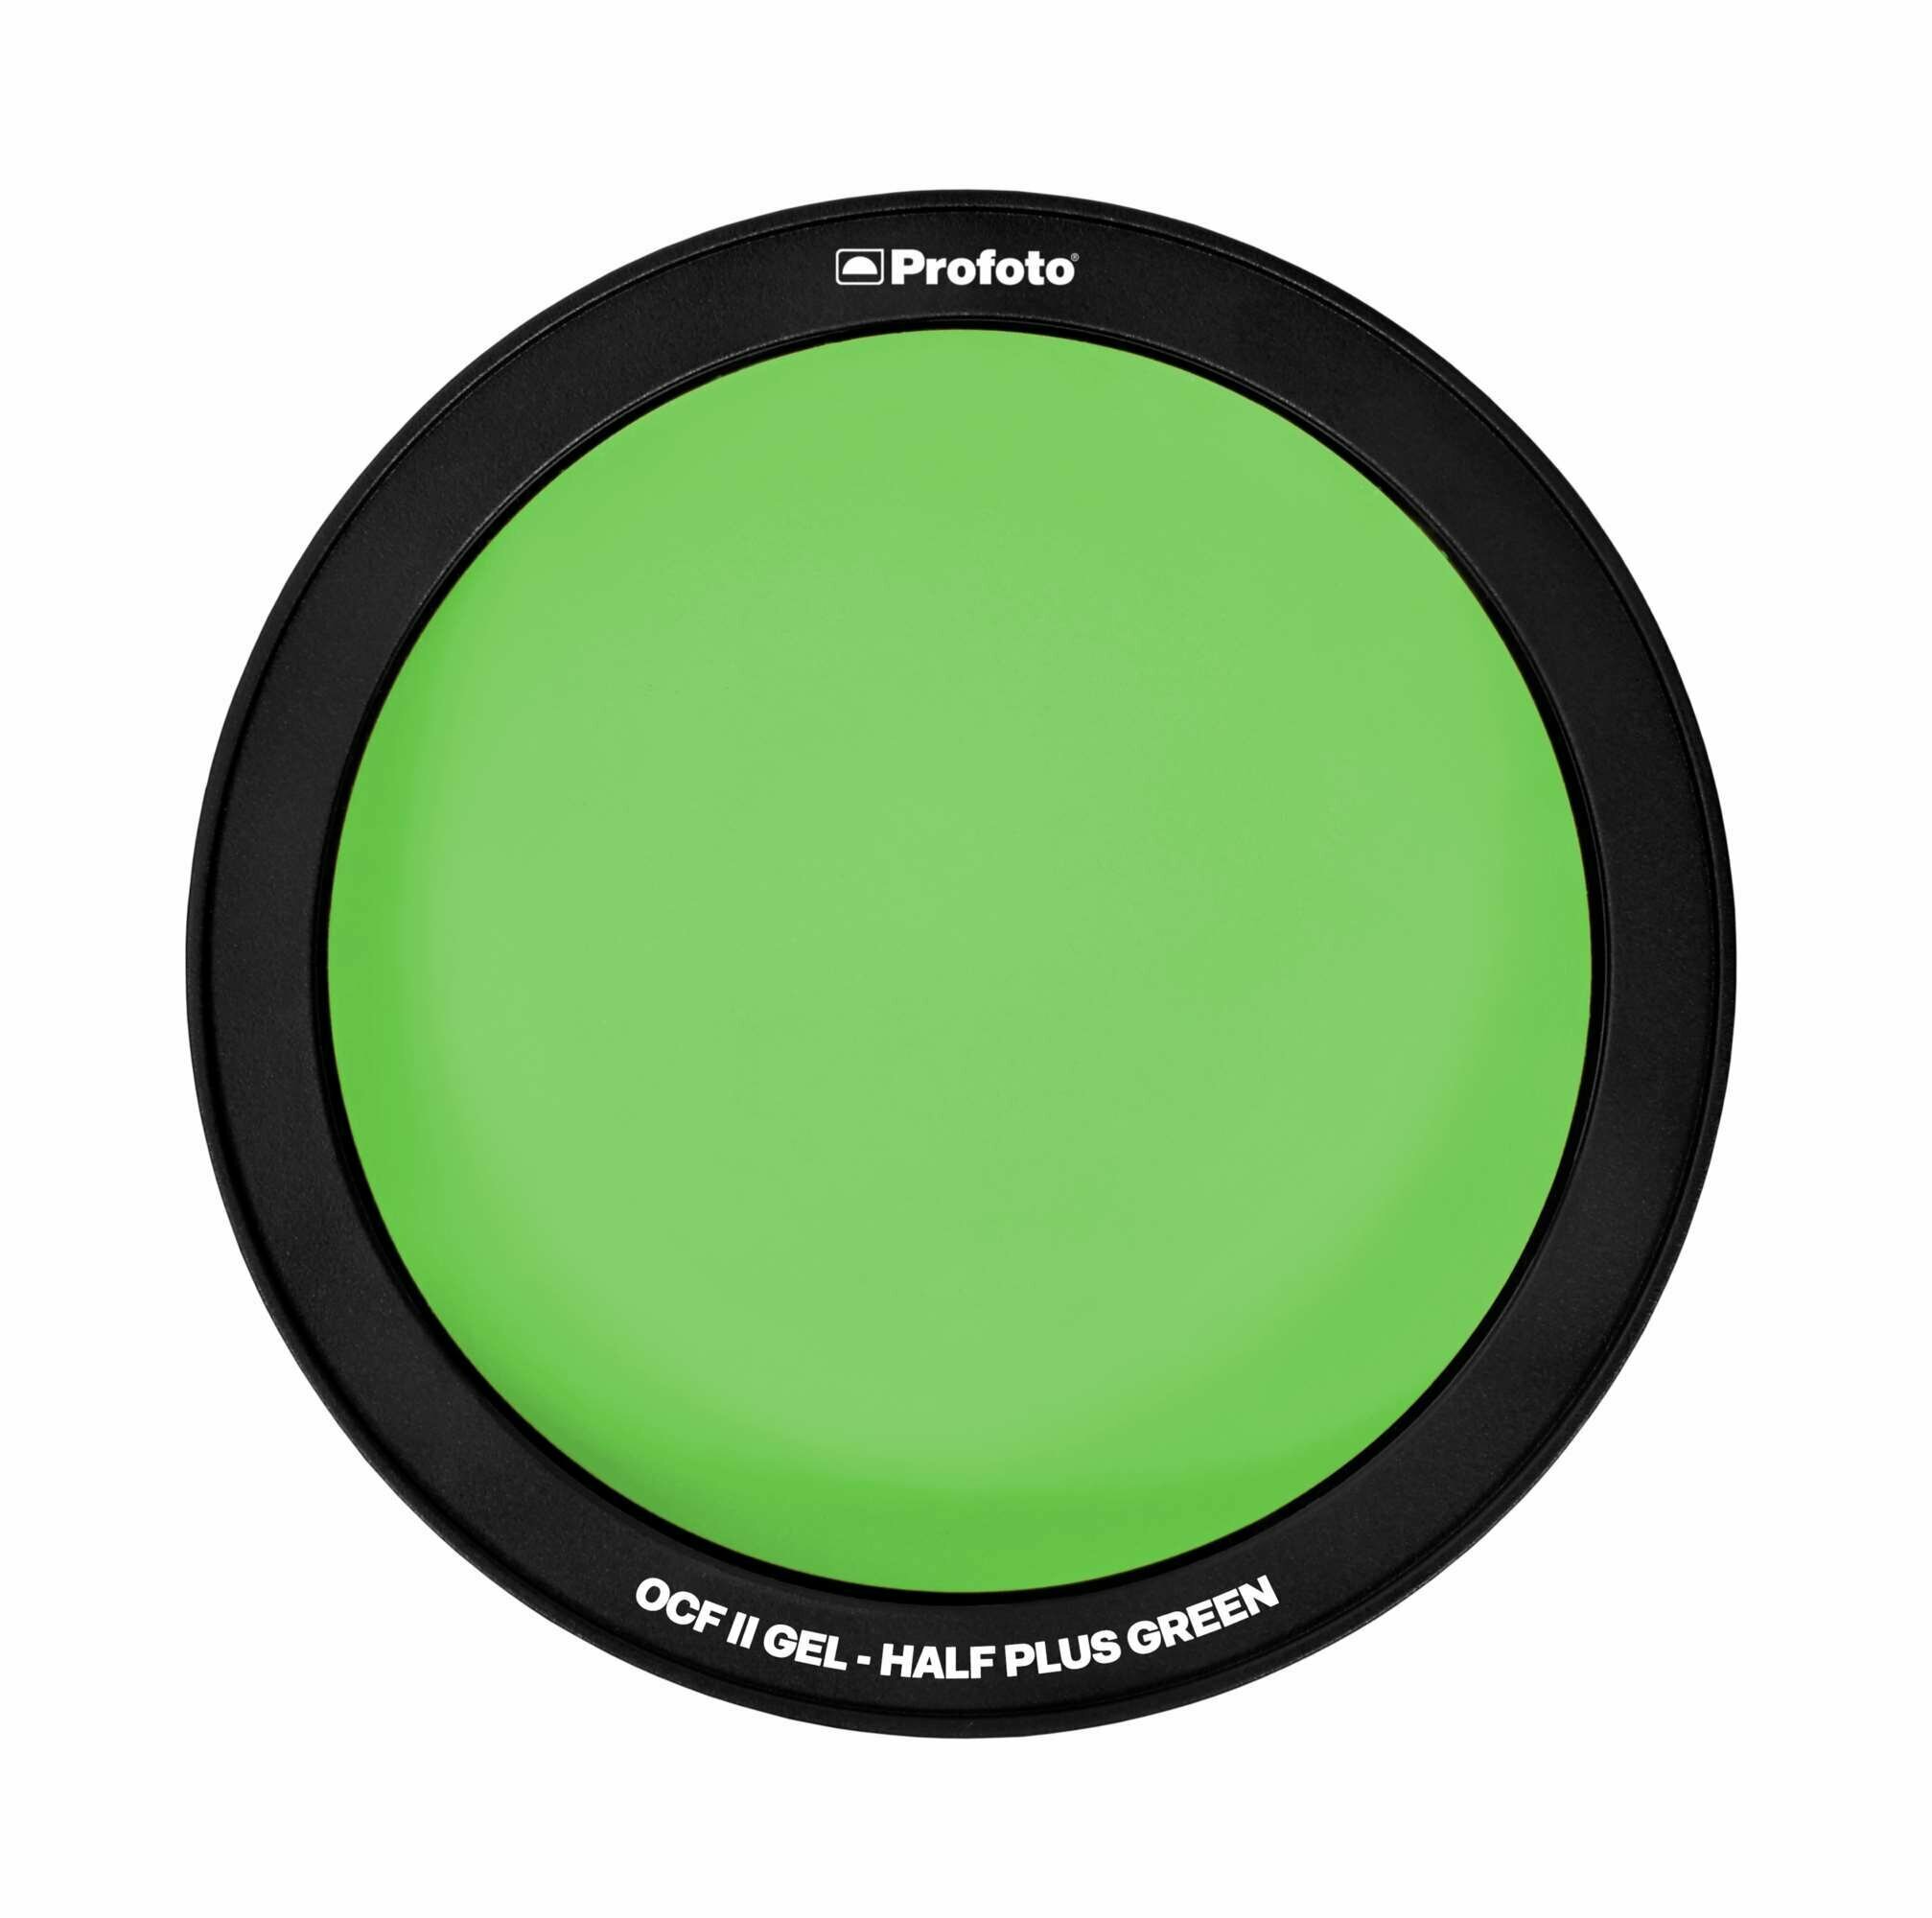 Цветной фильтр Profoto OCF II Gel - Half Plus Green